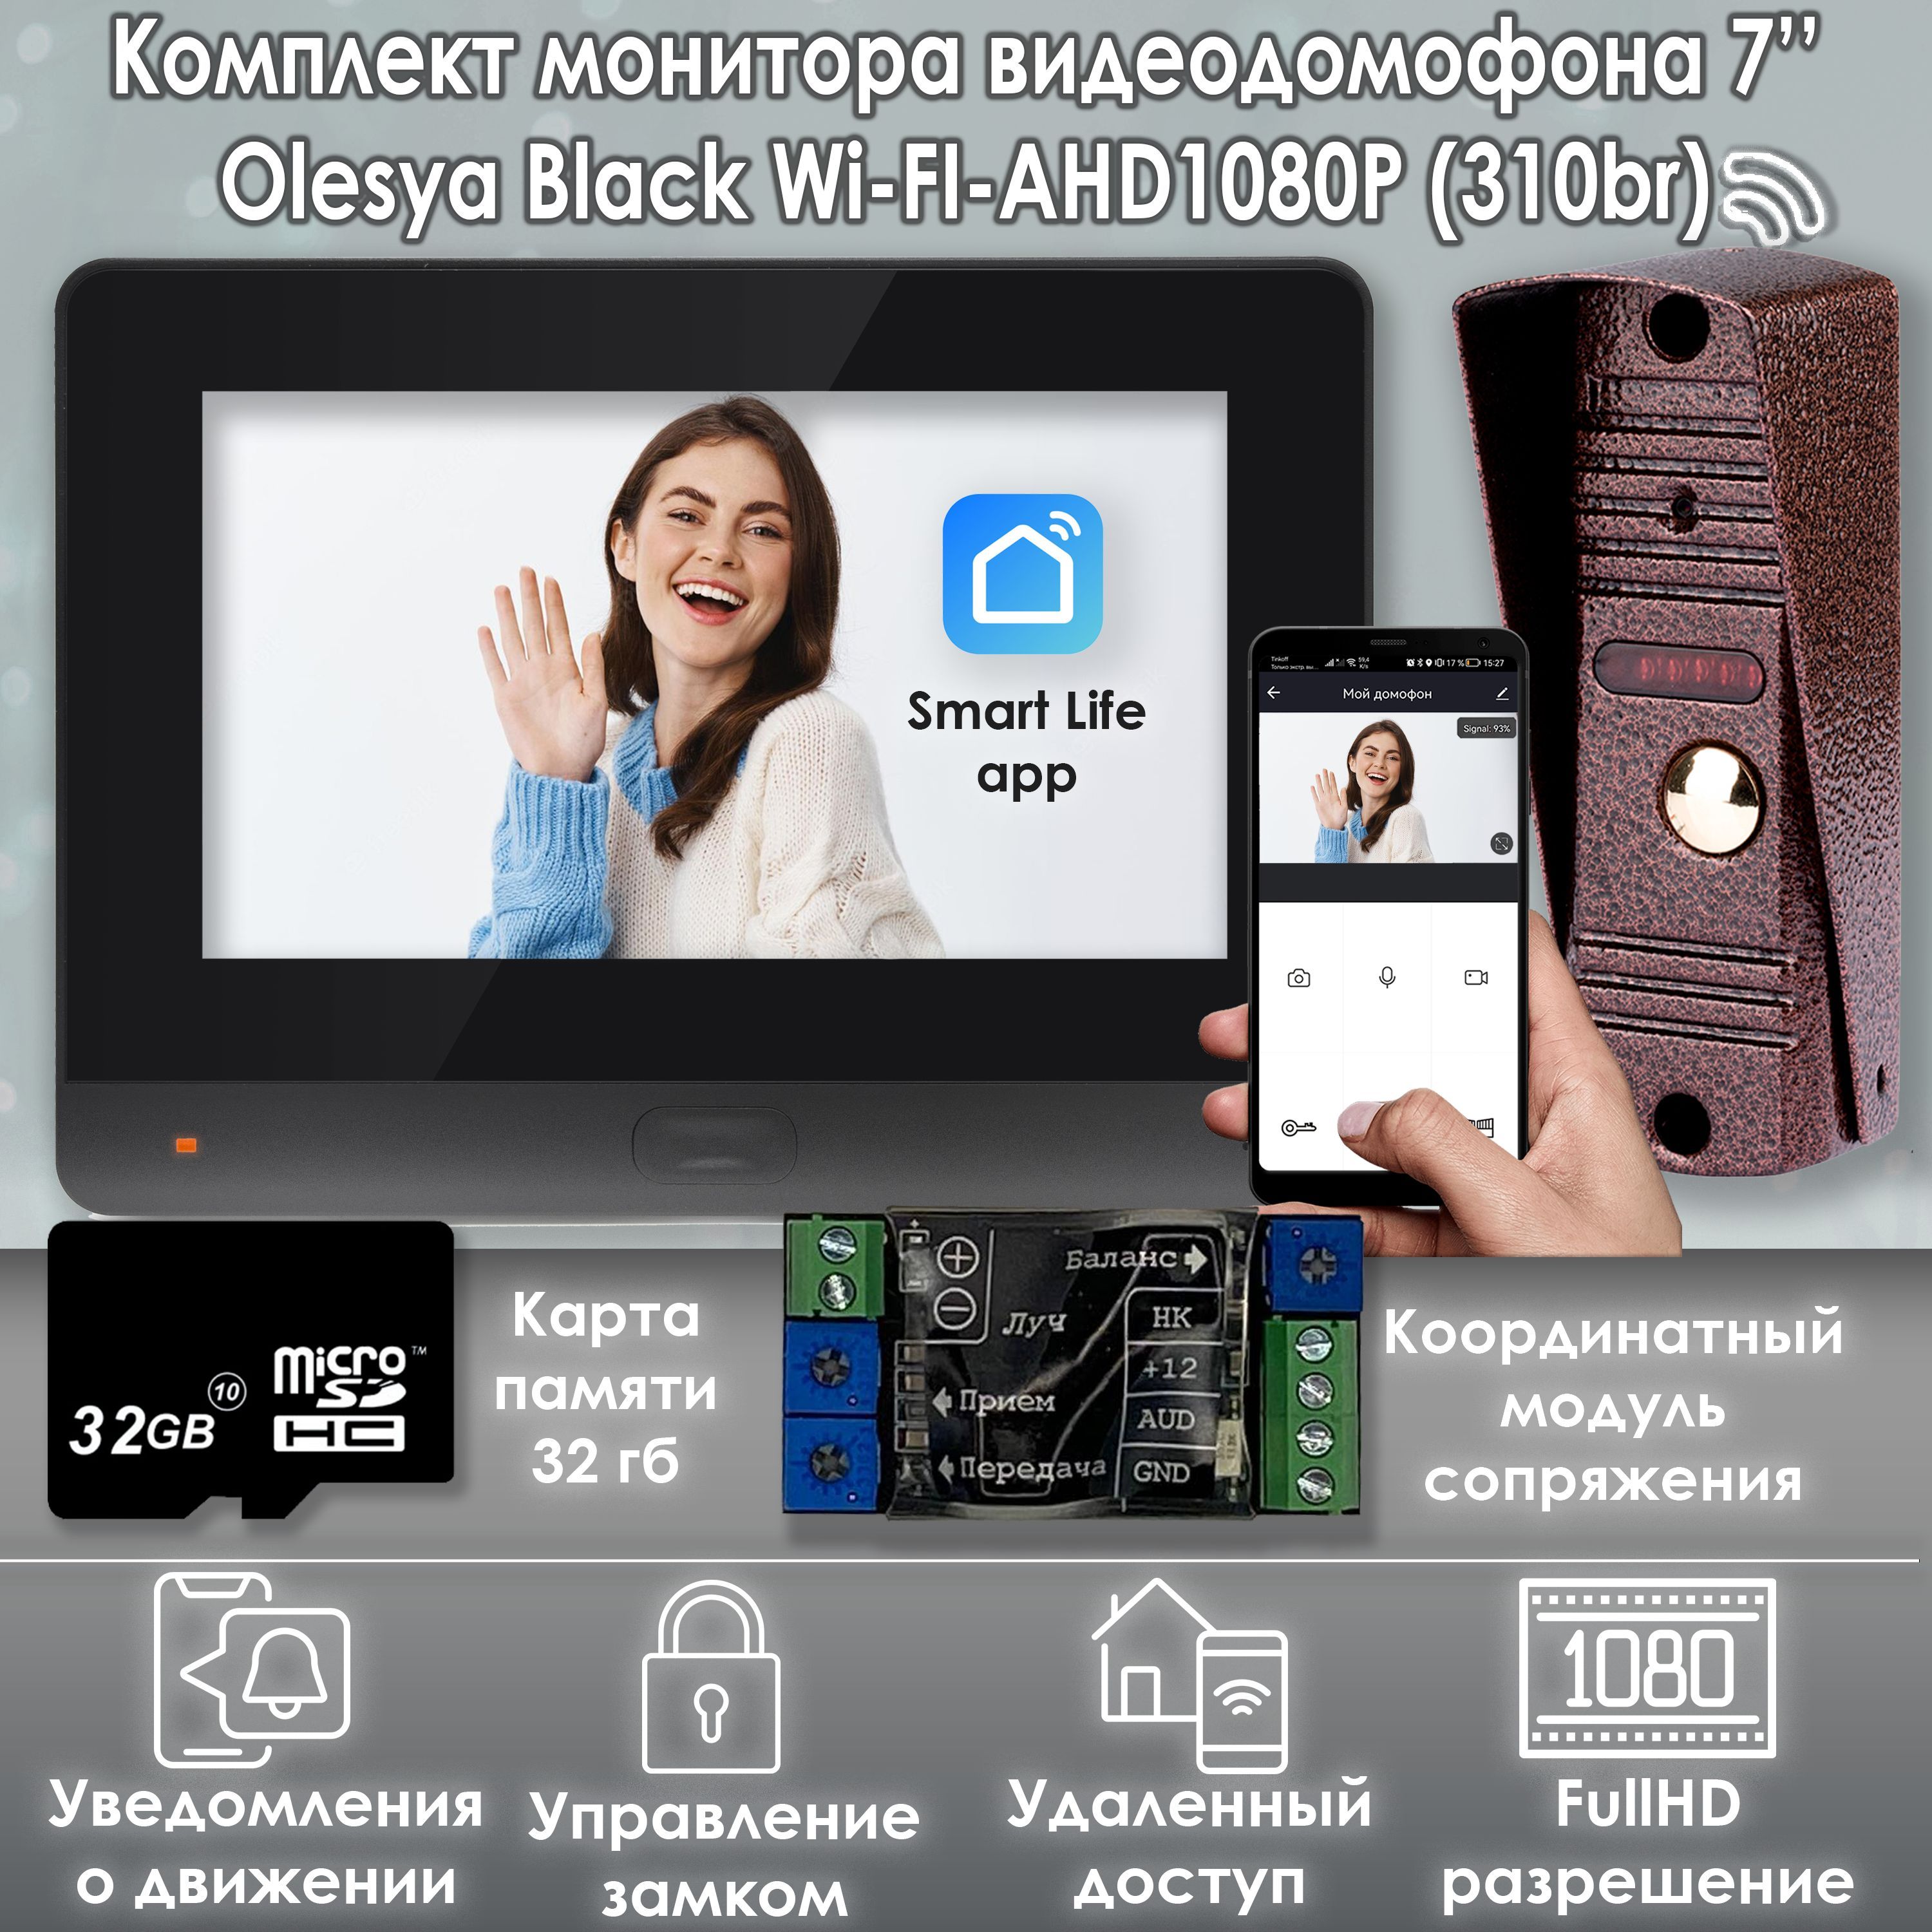 Комплект видеодомофона Alfavision Olesya Wi-Fi AHD1080P Full HD (310br), Черный комплект видеодомофона alfavision lada ahd1080p kit 310sl карта памяти 32гб в подарок